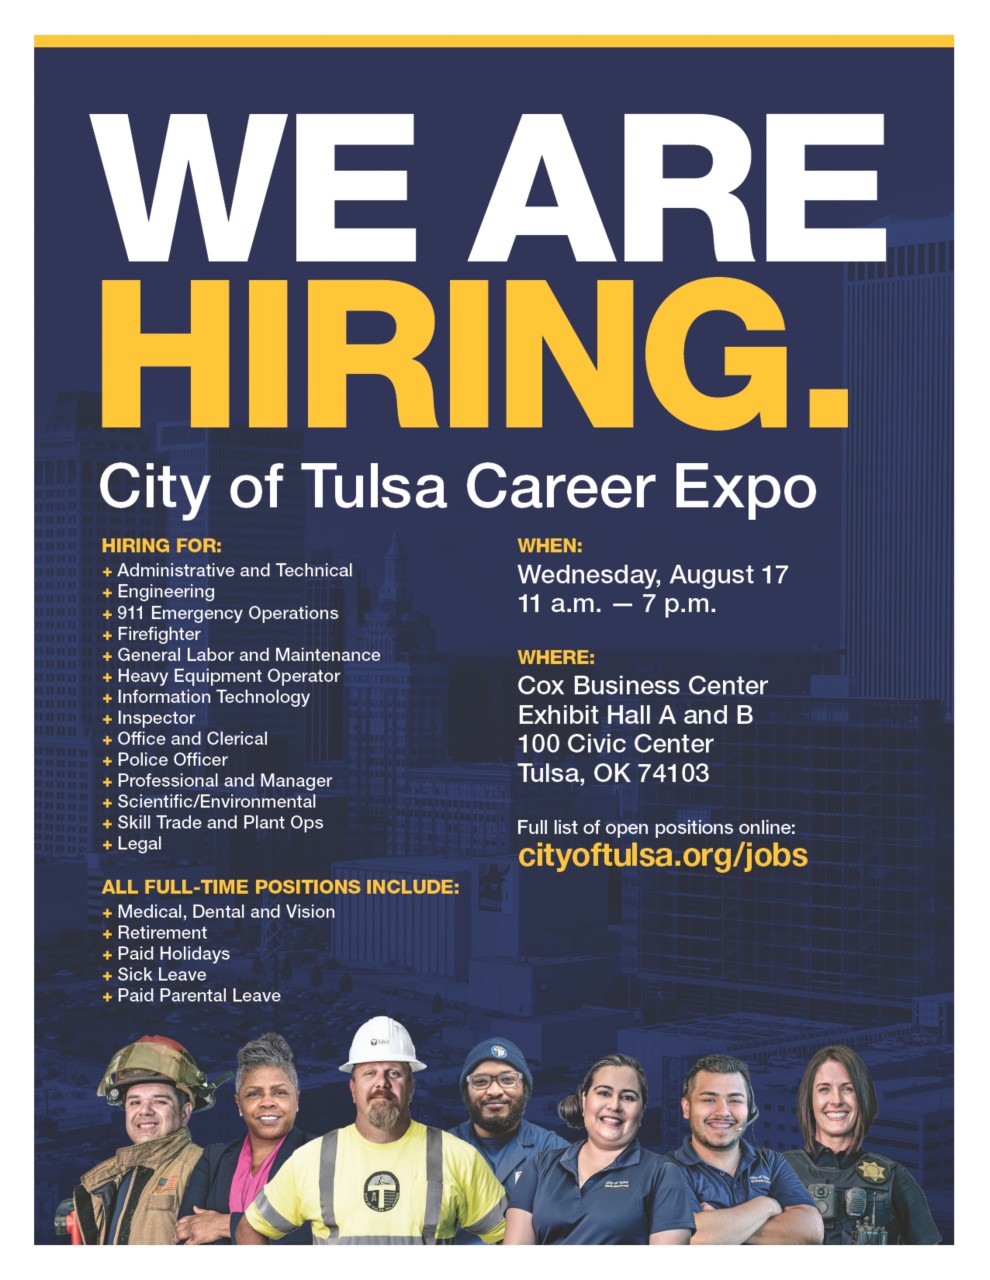 City of Tulsa Career Expo